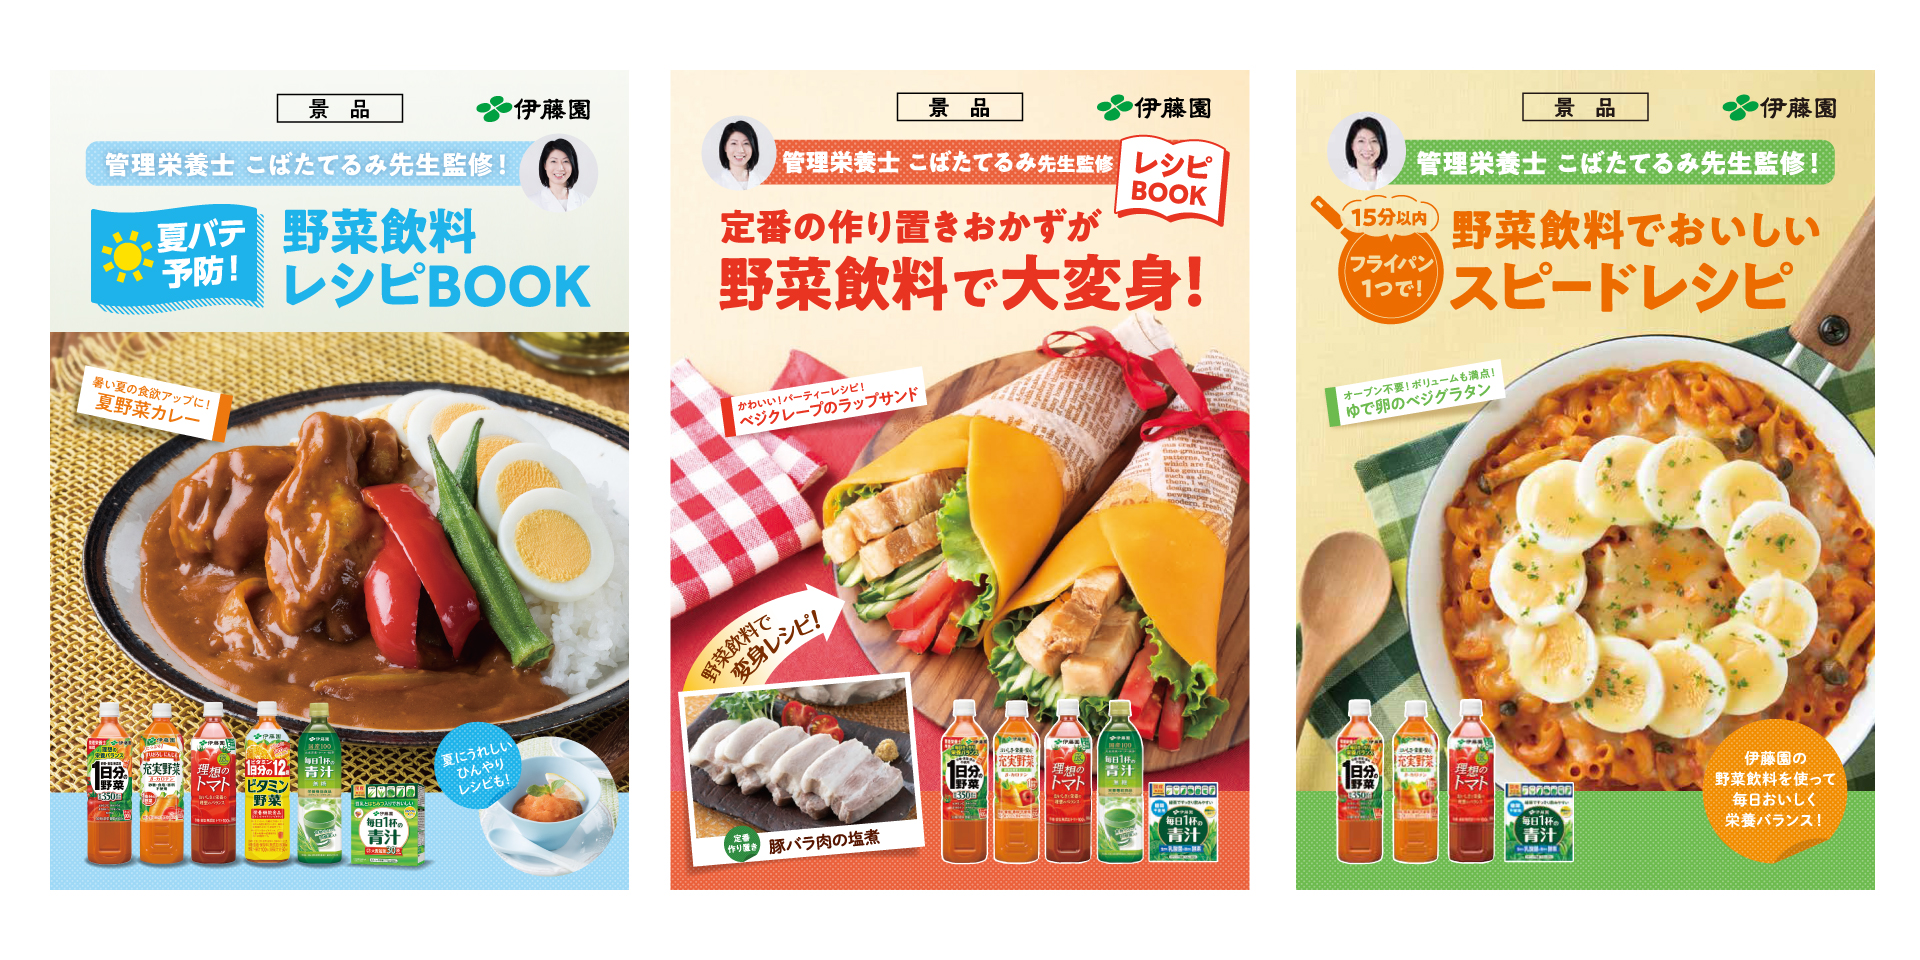 野菜飲料レシピブック 株式会社自然農園 販促 広告活動 地域開発事業のサポート 札幌 東京